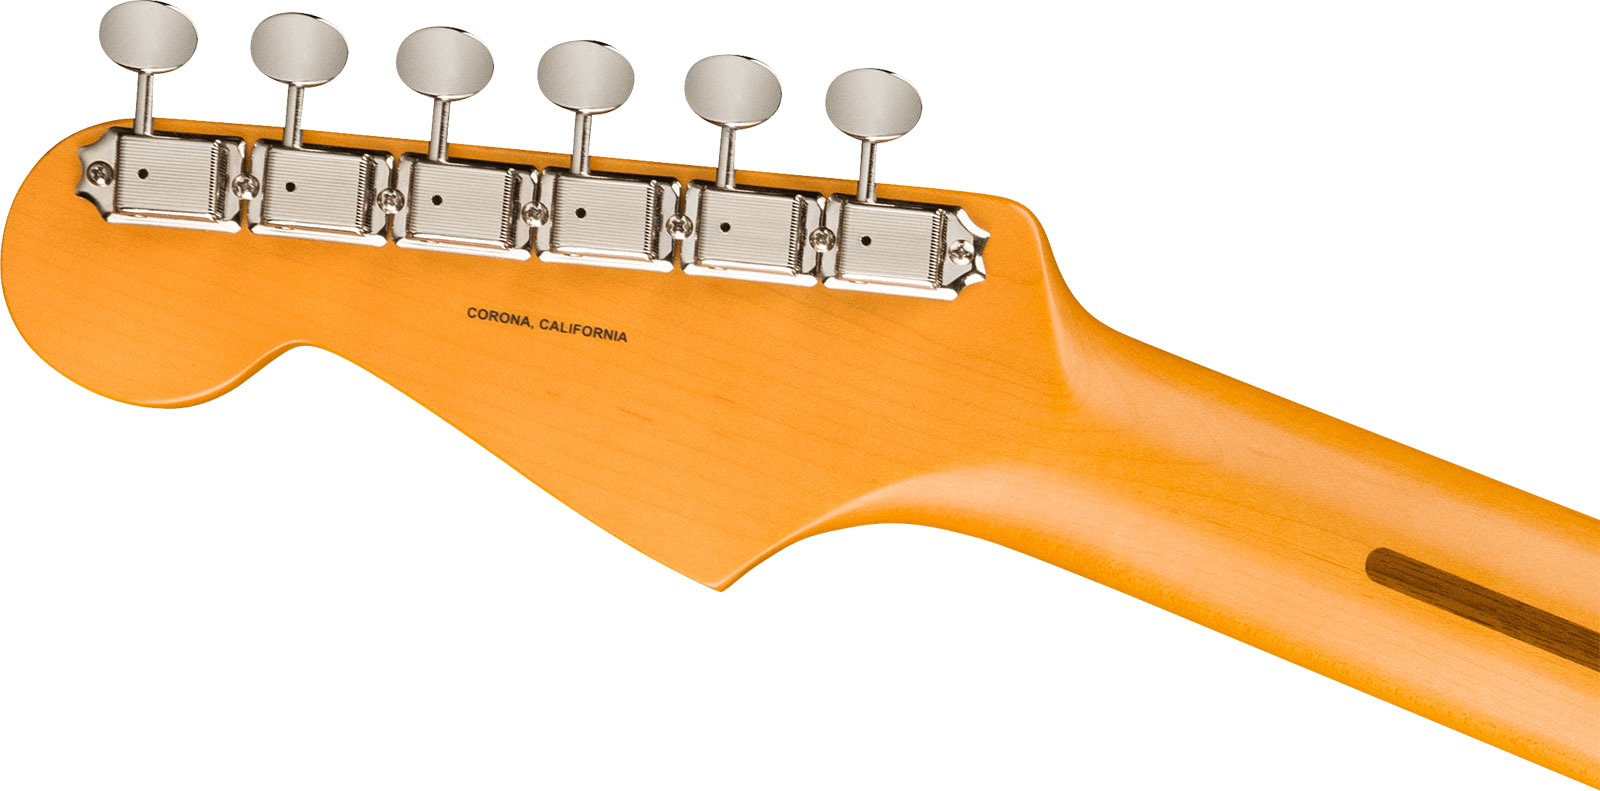 Fender Lincoln Brewster Strat Usa Signature 3s Dimarzio Trem Mn - Olympic Pearl - Retro-Rock-E-Gitarre - Variation 3